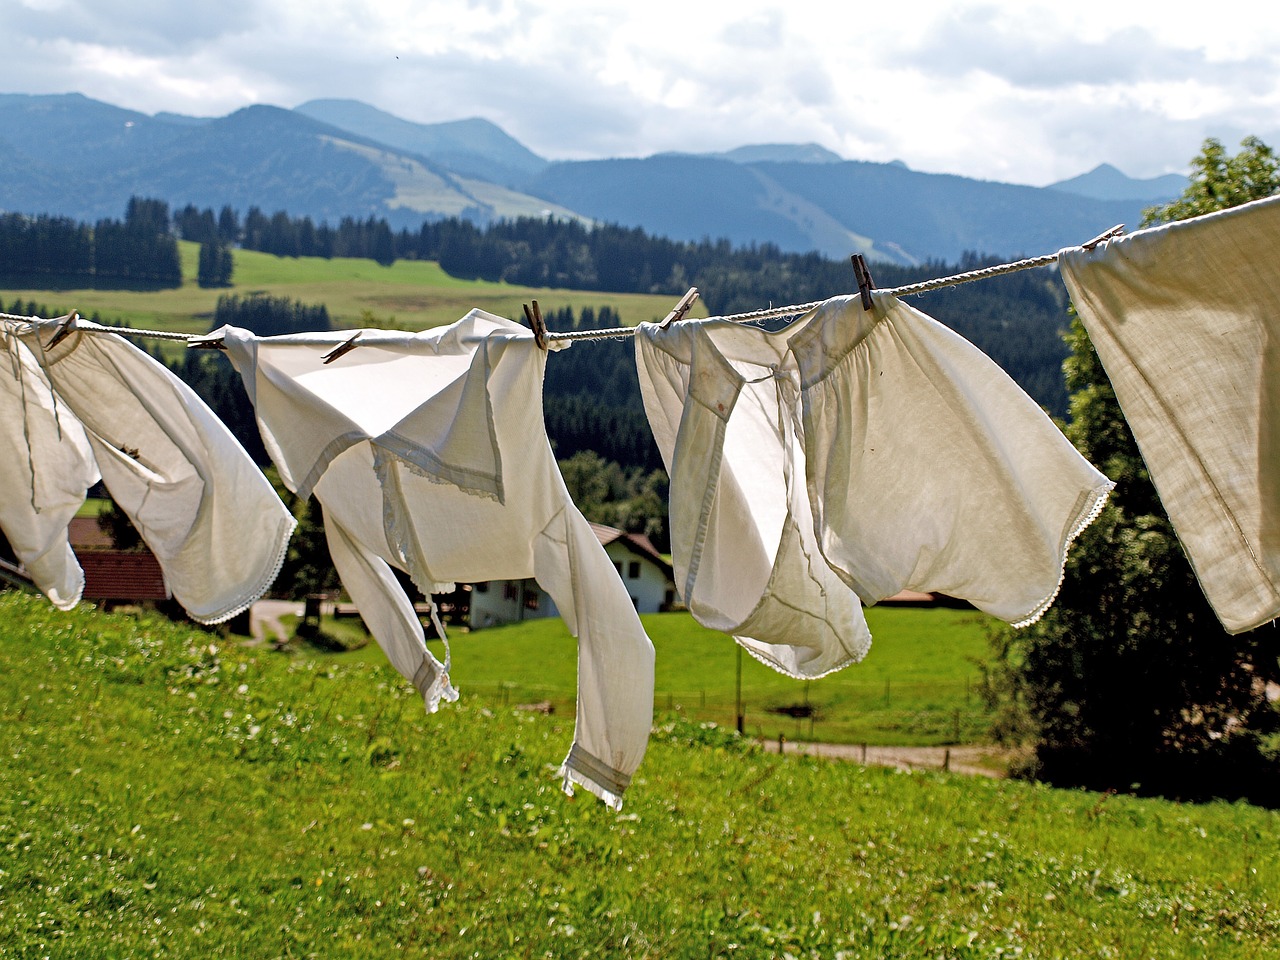 5 najczęściej popełnianych błędów podczas prania